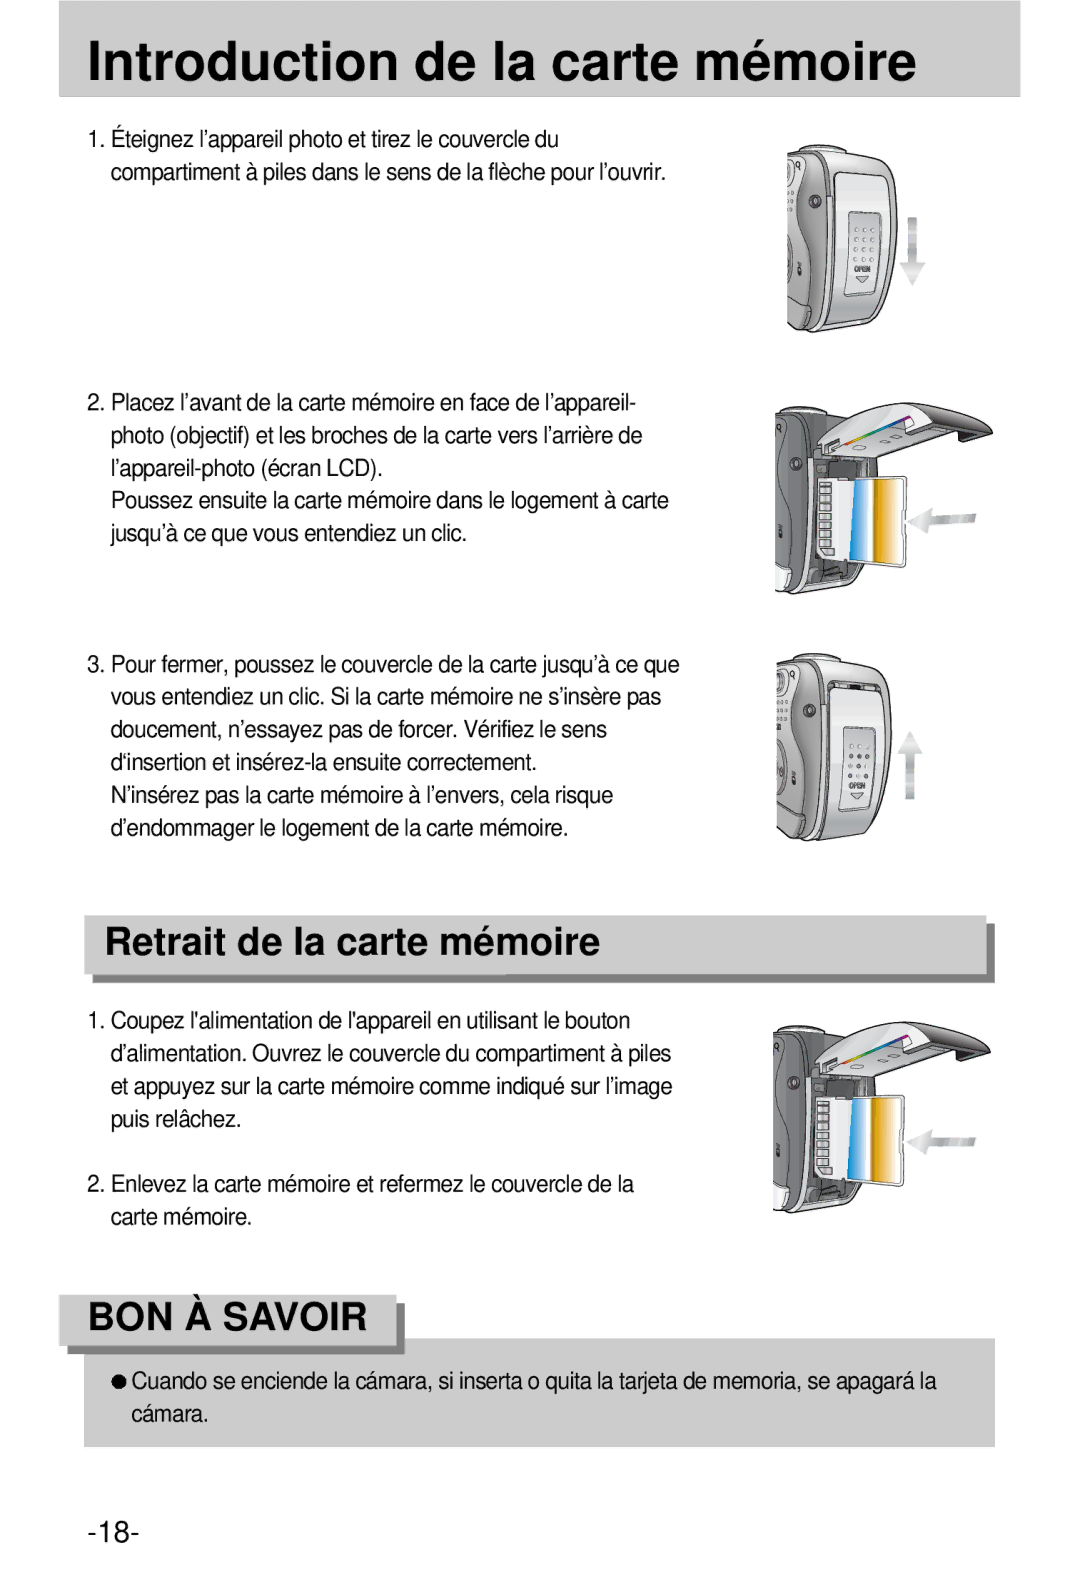 Samsung EC-V800ZSBA/FR manual Introduction de la carte mémoire, Retrait de la carte mémoire 